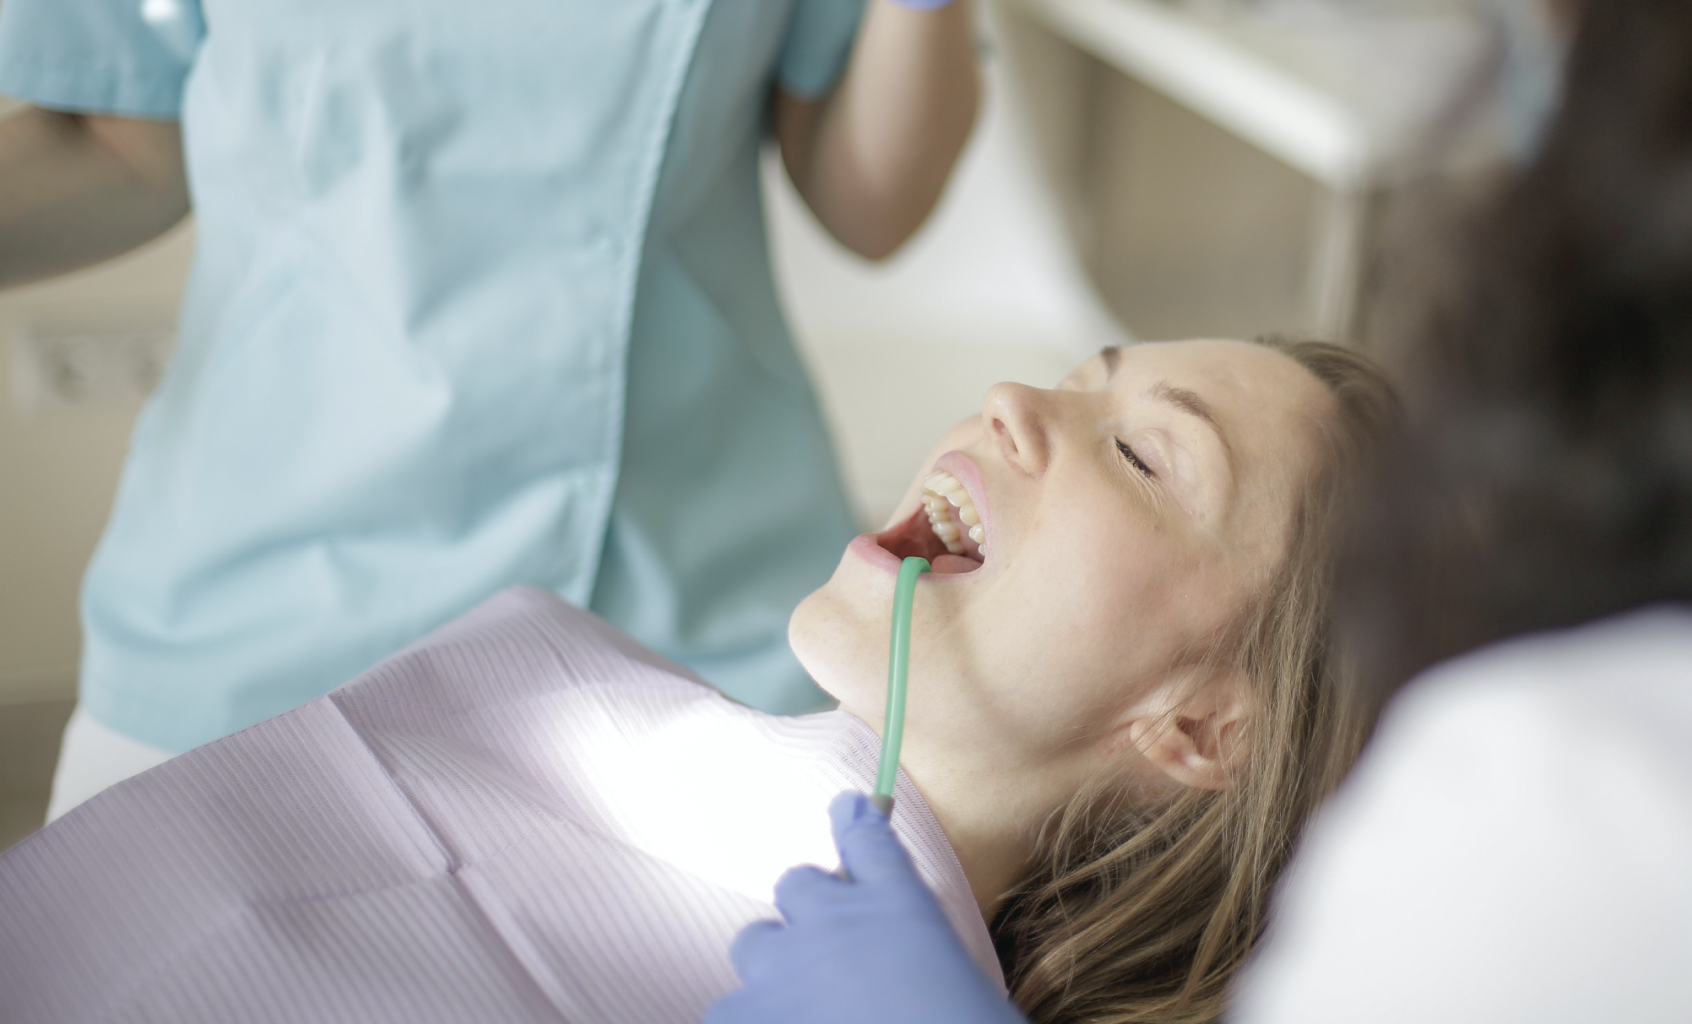 Female dental patient receiving treatment